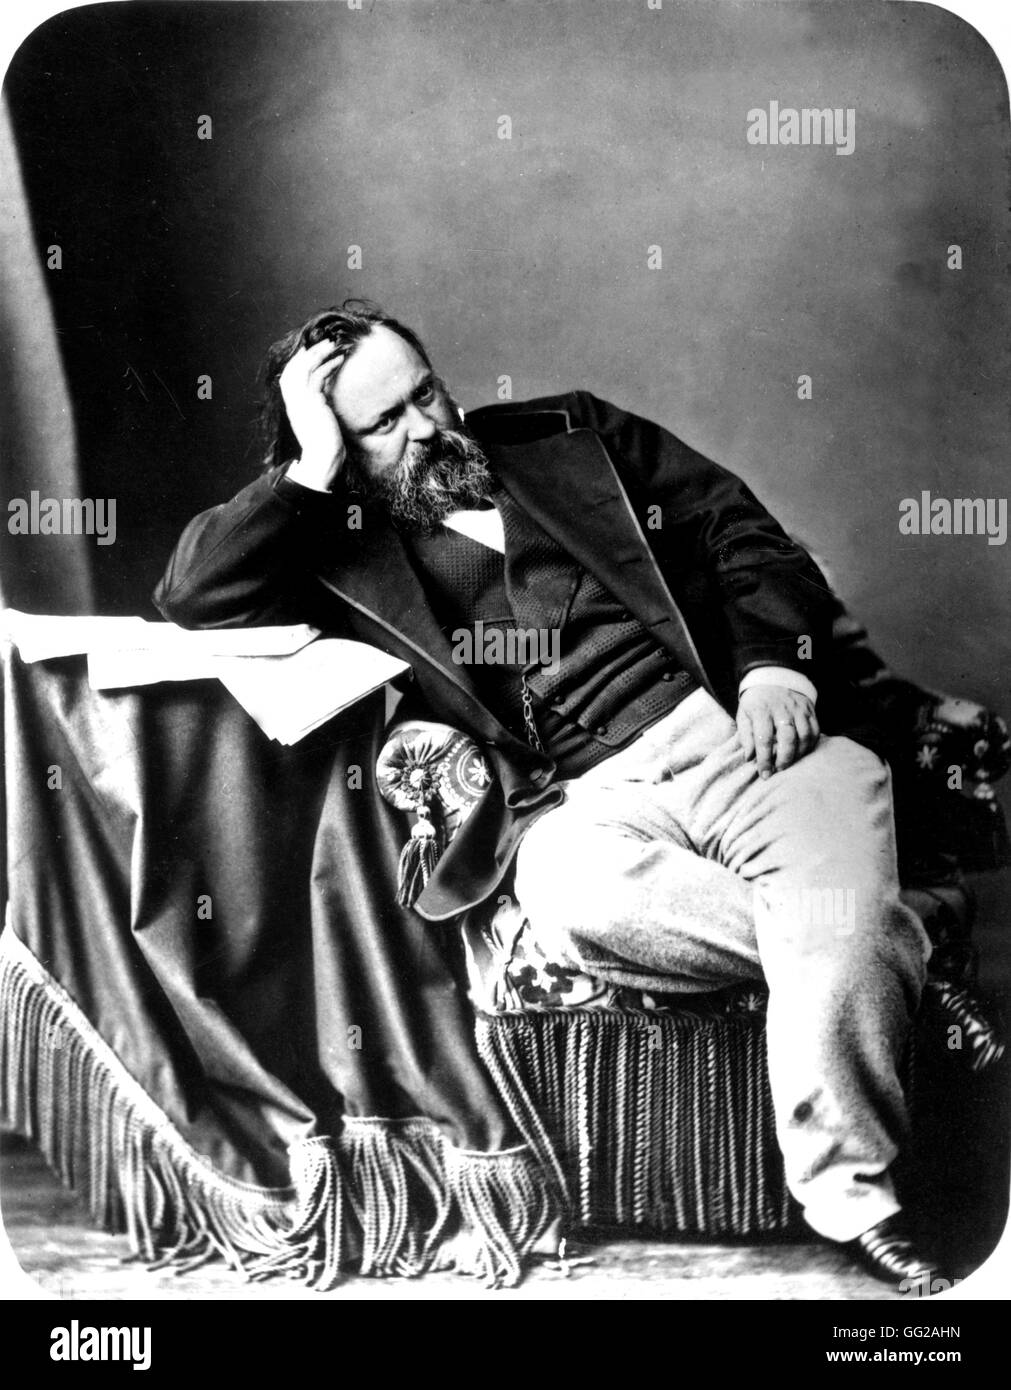 Herzen (1812-1870), russischer Philosoph und Schriftsteller des 19. Jahrhunderts Russland Paris. Nationalbibliothek Stockfoto